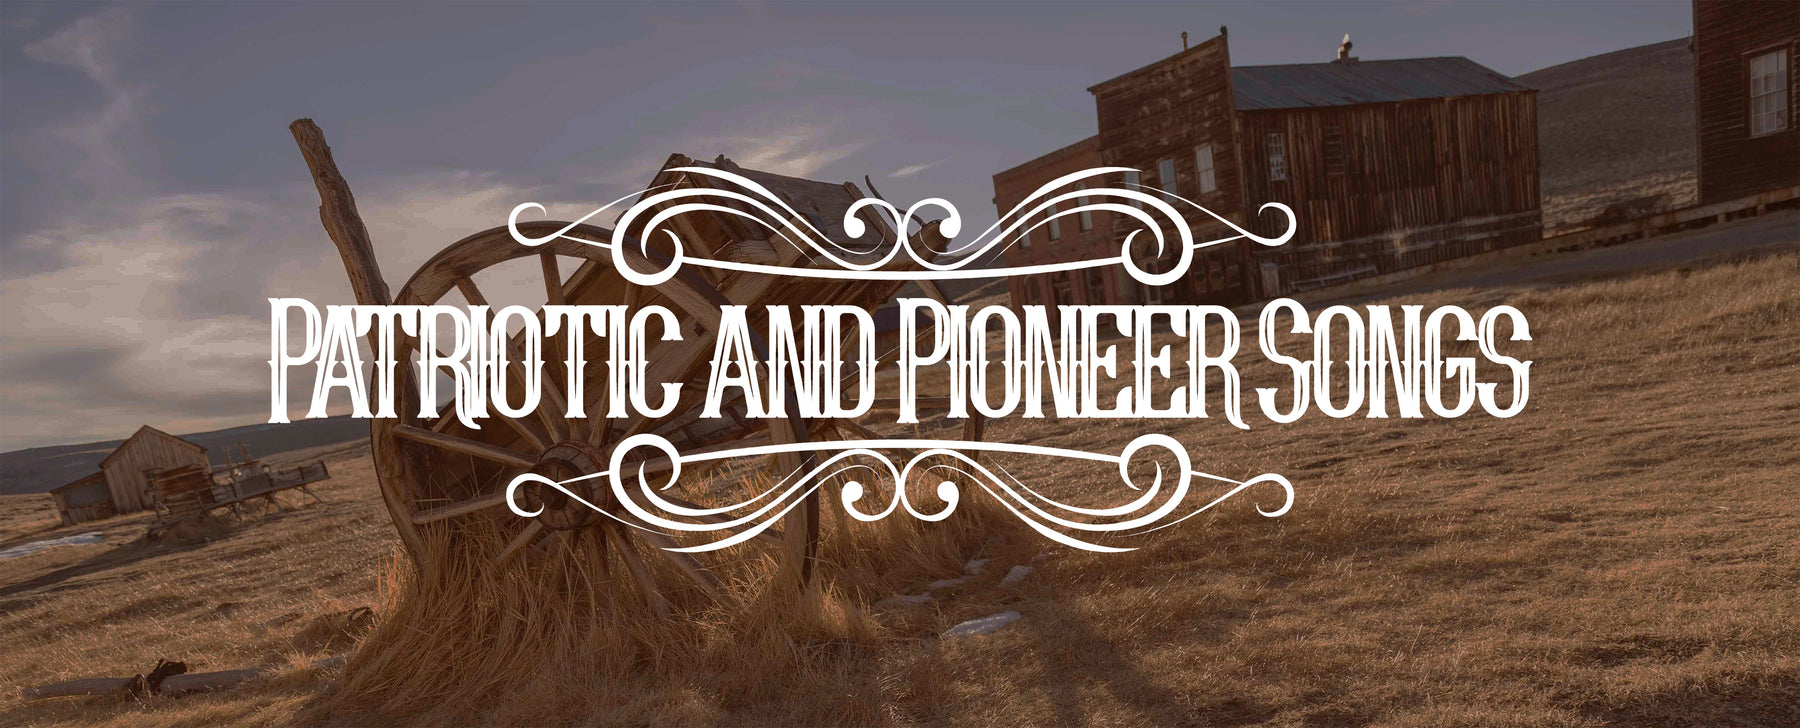 Patriotic and Pioneer Songs